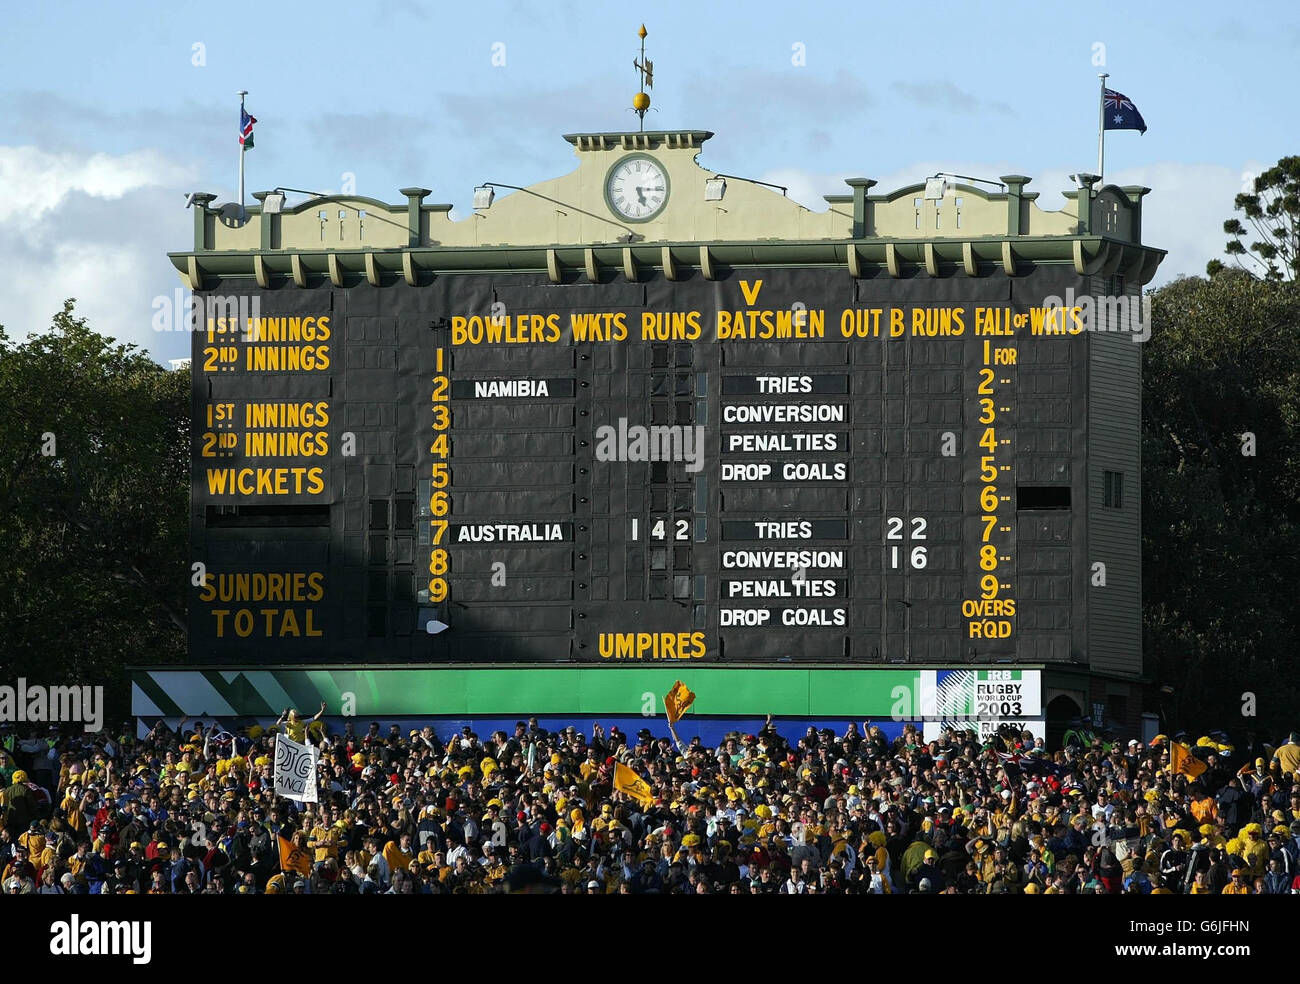 Le tableau de bord du cricket de l'Adelaide Oval montre le score final de la victoire de l'Australie en 142-0 sur la Namibie lors de leur match de rugby à XV. PAS D'UTILISATION DE TÉLÉPHONE MOBILE. LES SITES INTERNET NE PEUVENT UTILISER QU'UNE IMAGE TOUTES LES CINQ MINUTES PENDANT LE MATCH Banque D'Images